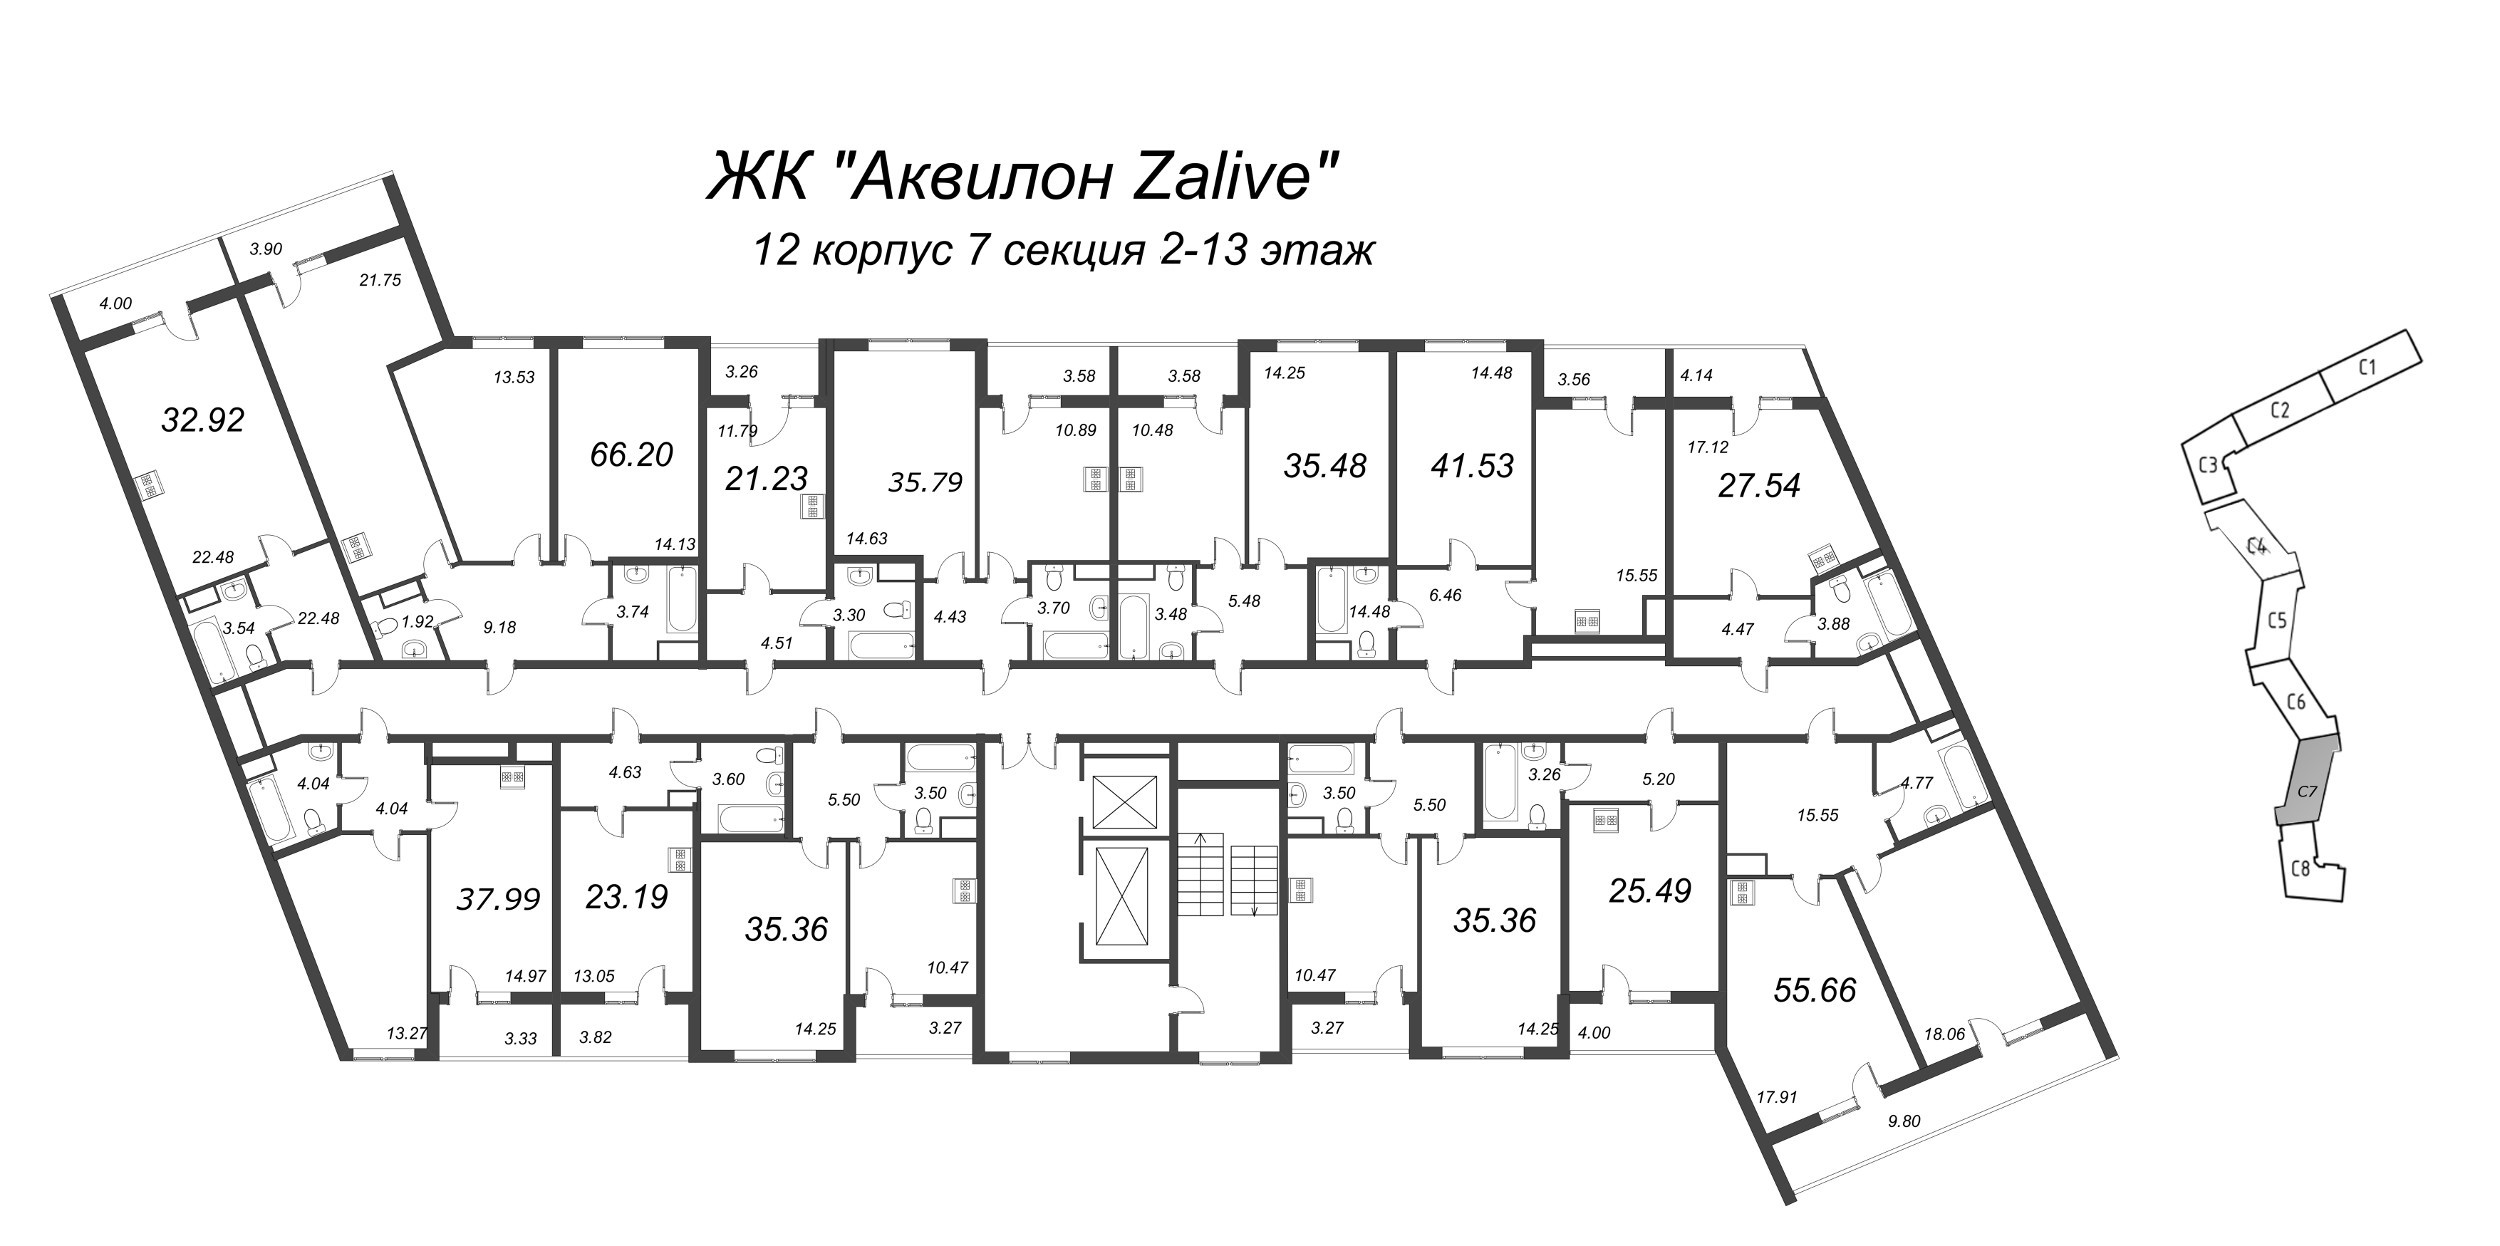 3-комнатная (Евро) квартира, 66.2 м² в ЖК "Аквилон Zalive" - планировка этажа